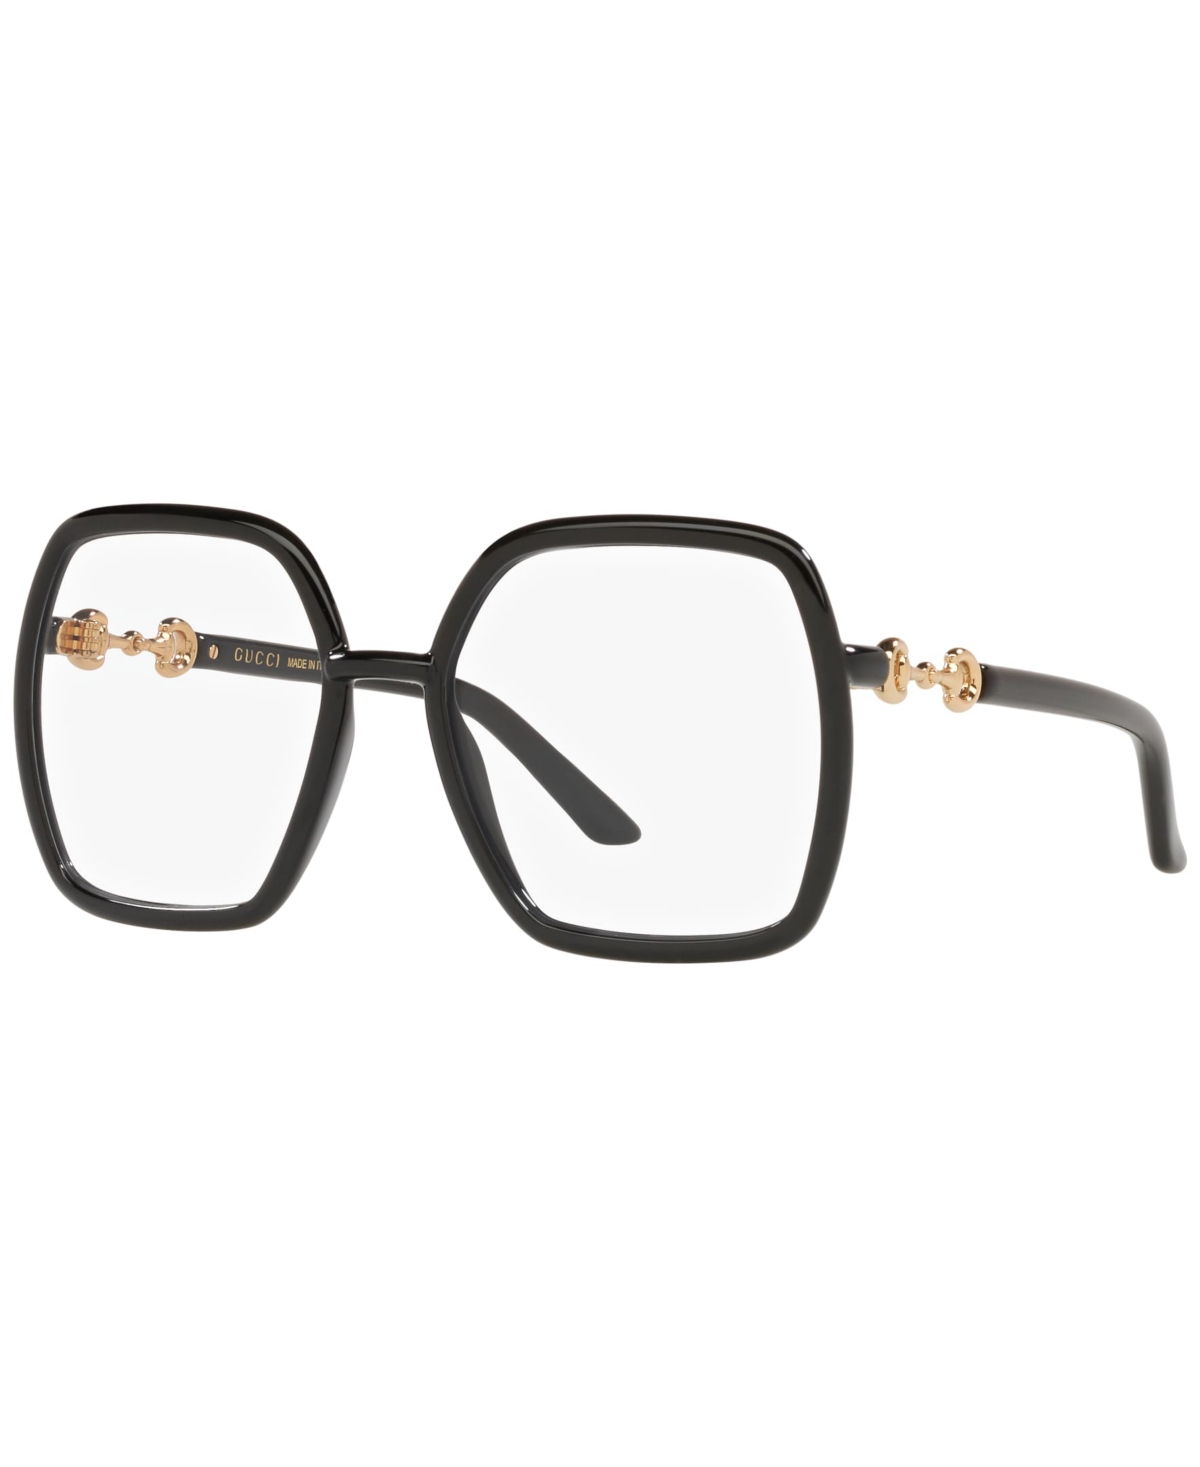 GC001515 Women's Rectangle Eyeglasses - Black